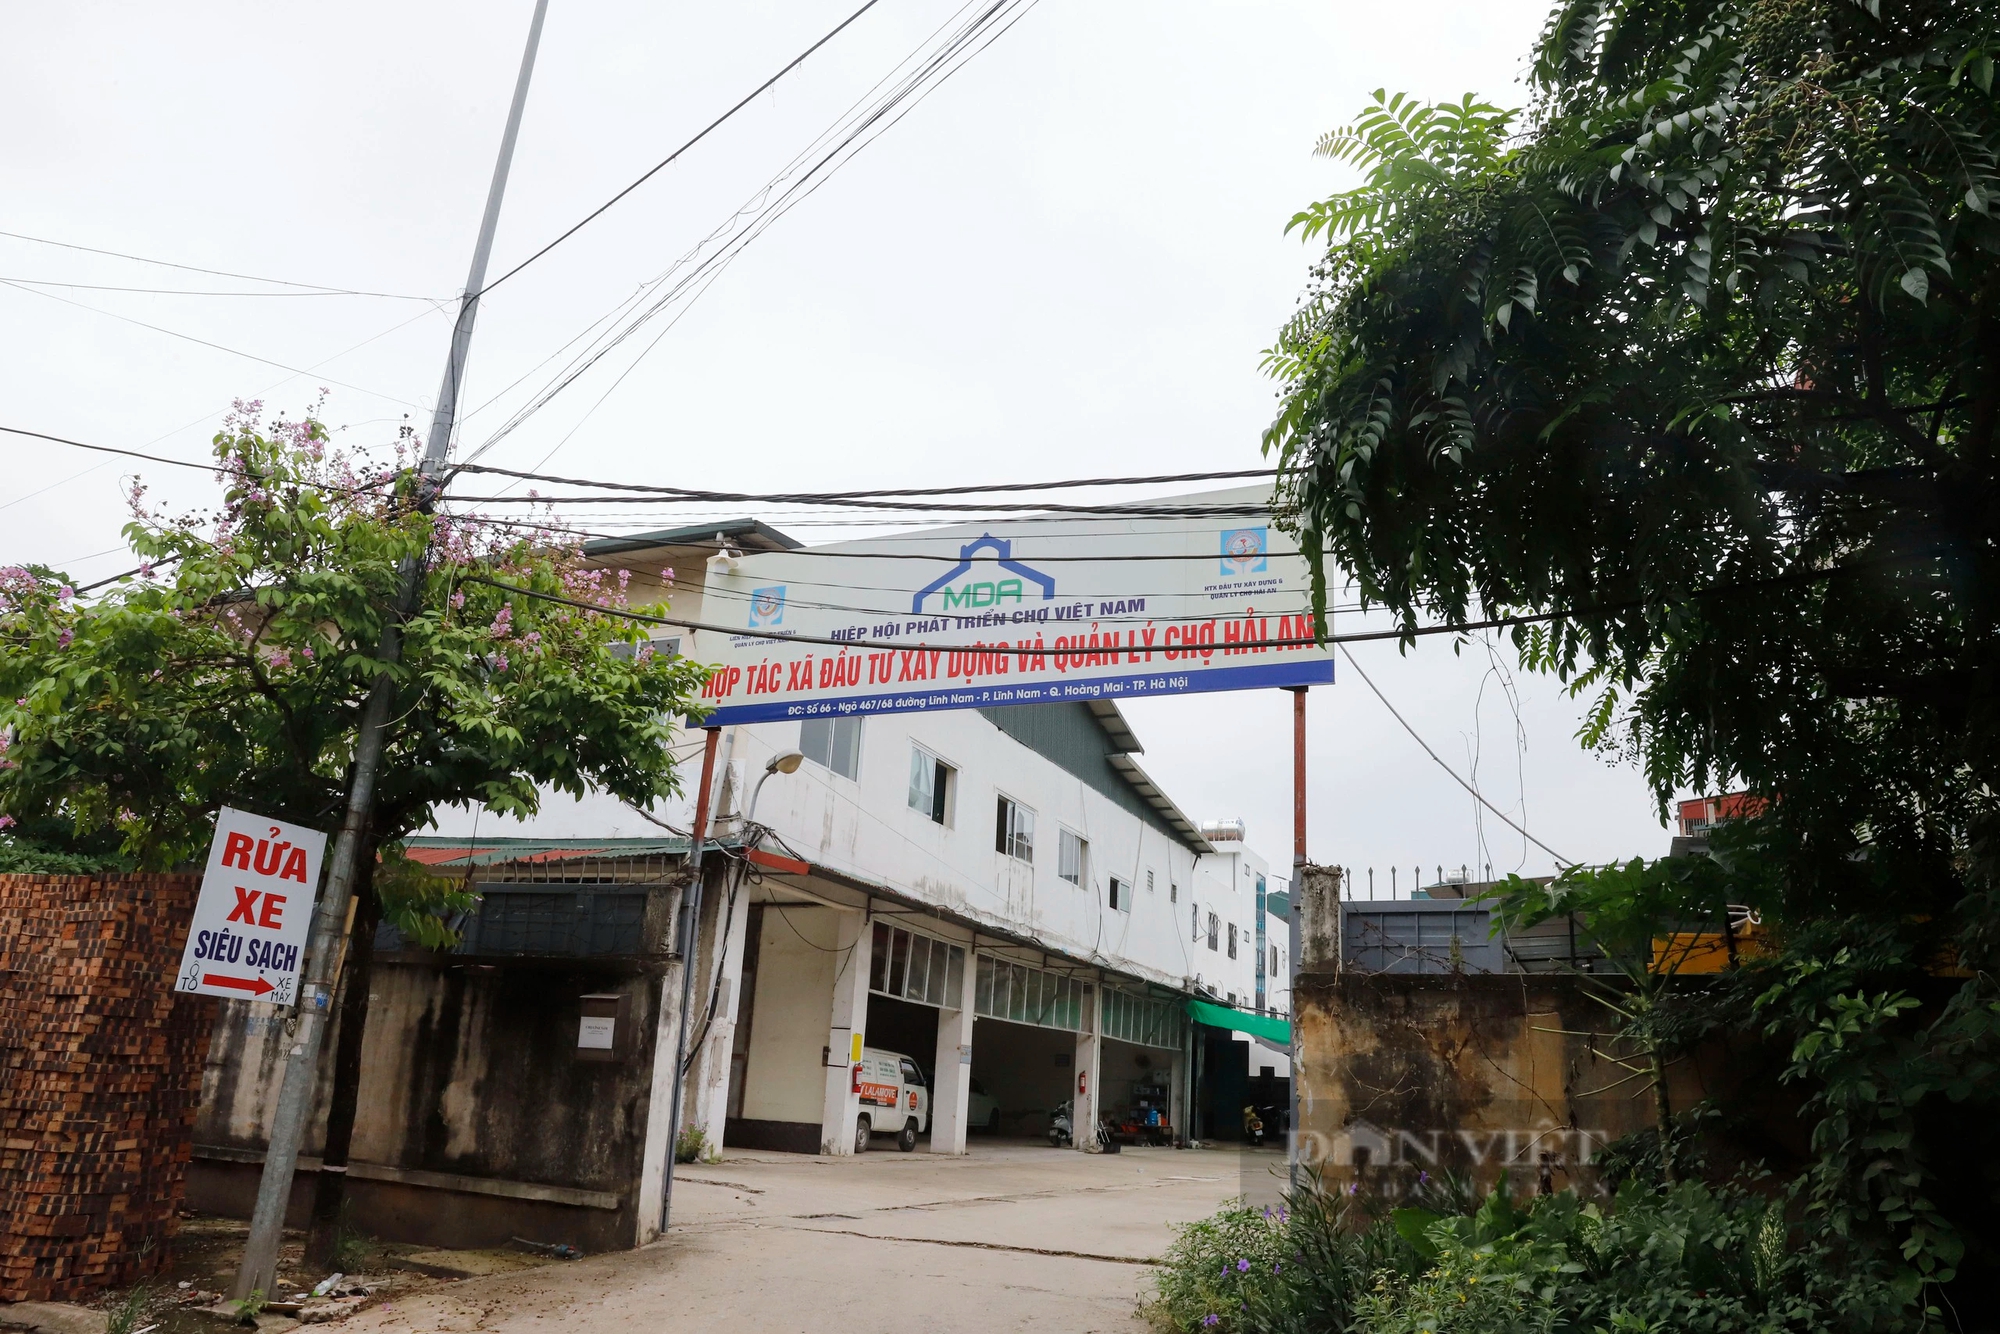 Chợ bỏ hoang ở Hà Nội: BQL viết thư ngỏ mời tiểu thương, kèm ưu đãi nhưng chợ vẫn "vắng như chùa Bà Đanh"- Ảnh 3.